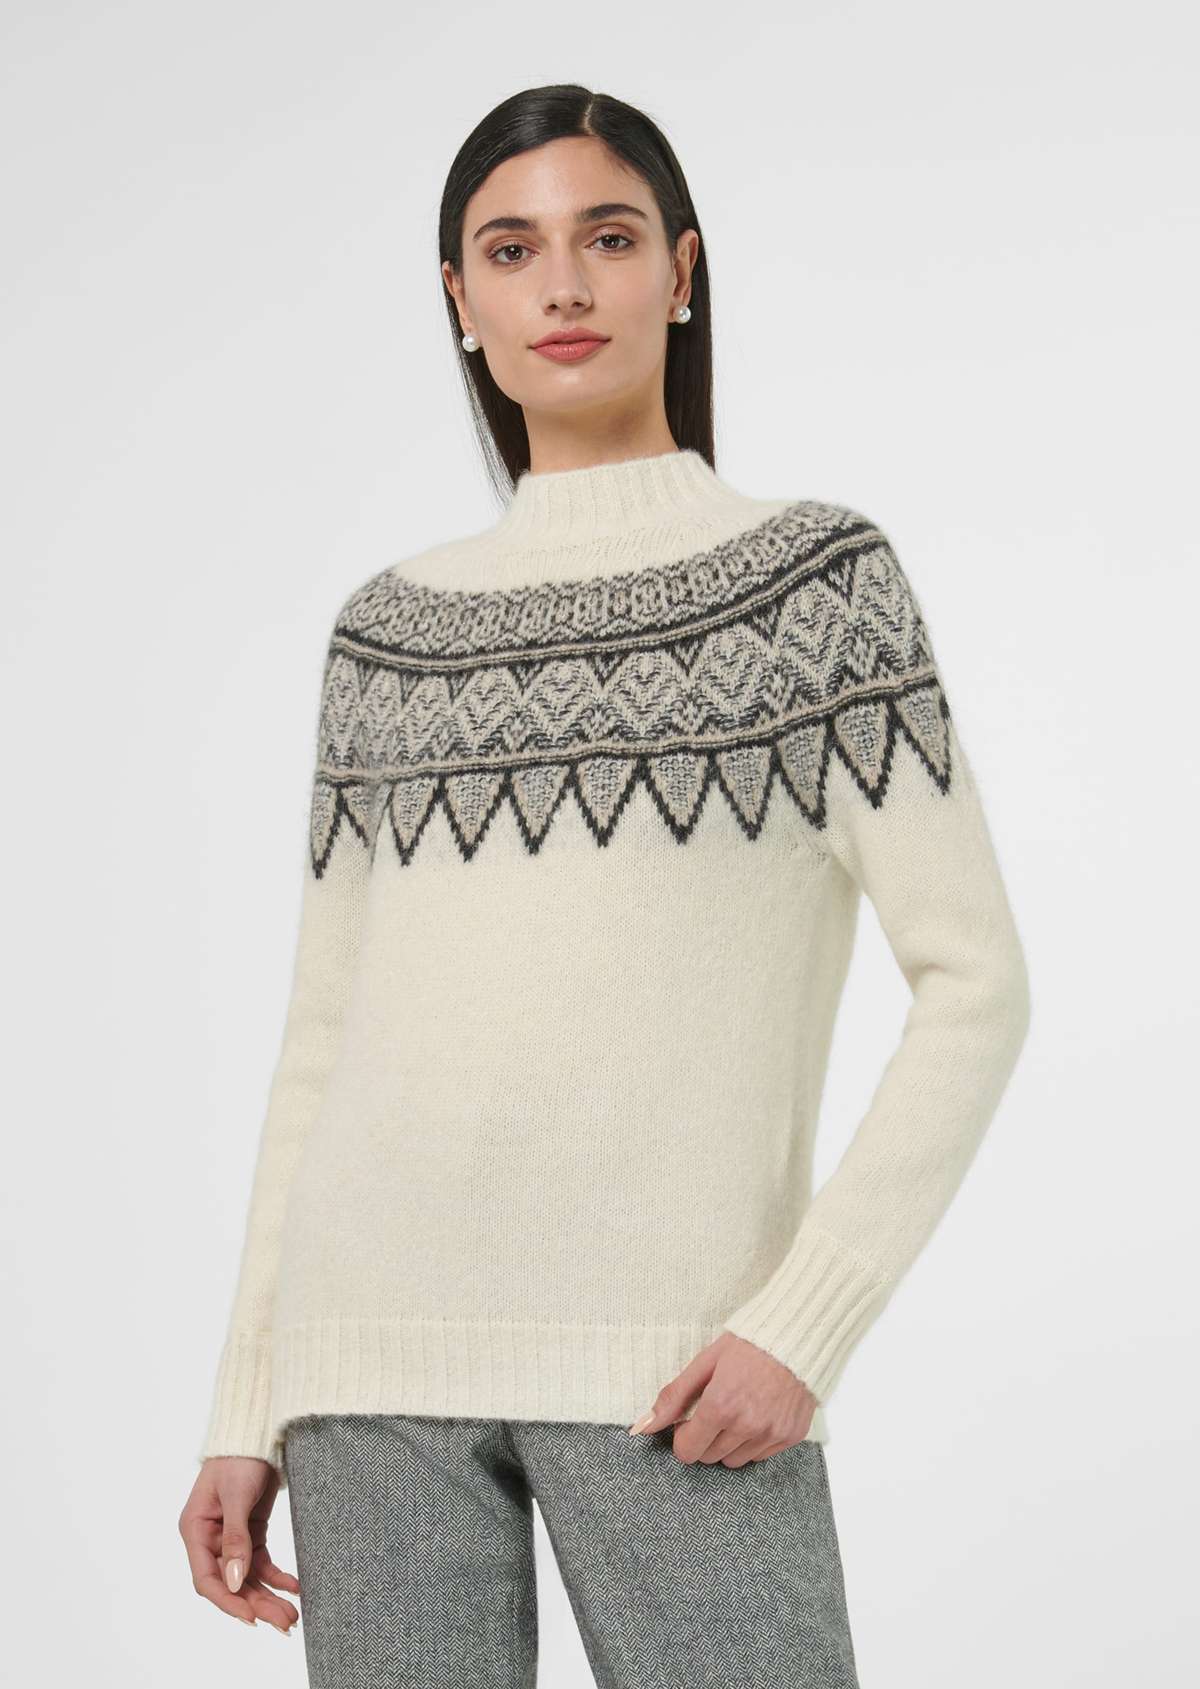 Норвежский свитер из натуральной шерсти и альпаки.